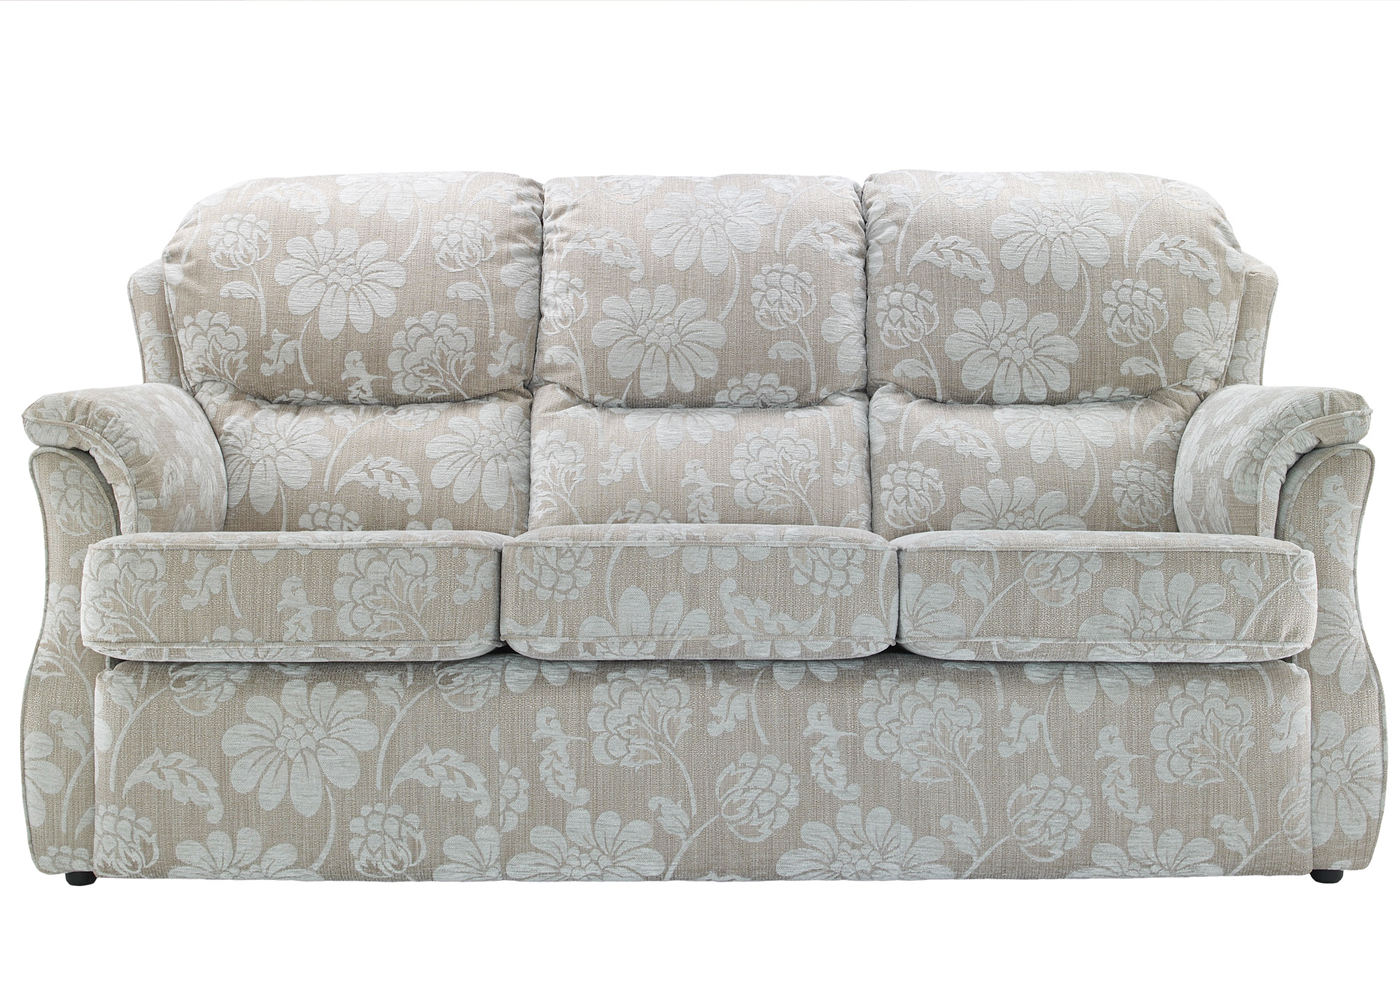 G Plan Florence 3 seater sofa - Midfurn Furniture Superstore